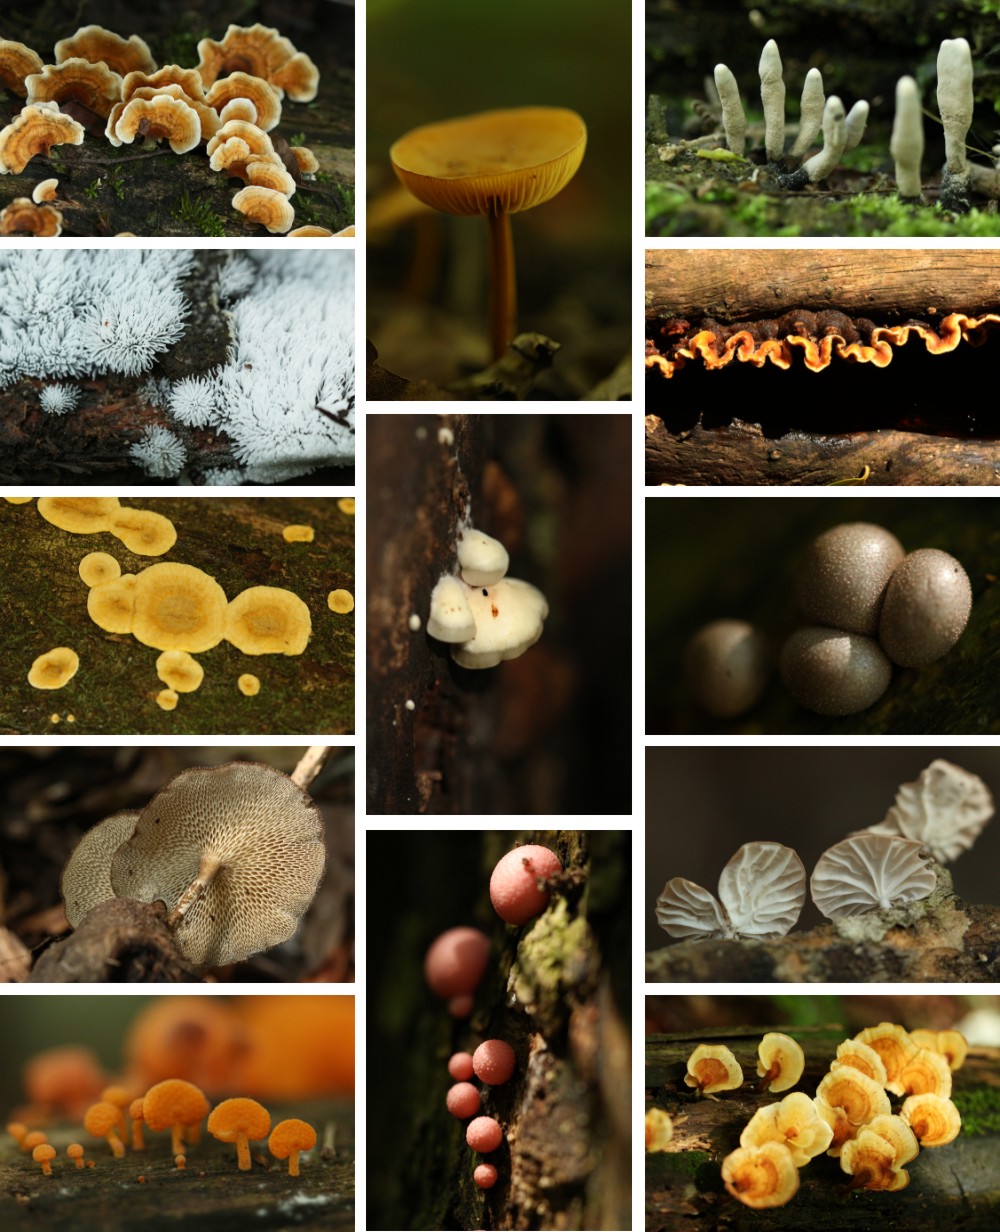 Fungi of Ngome